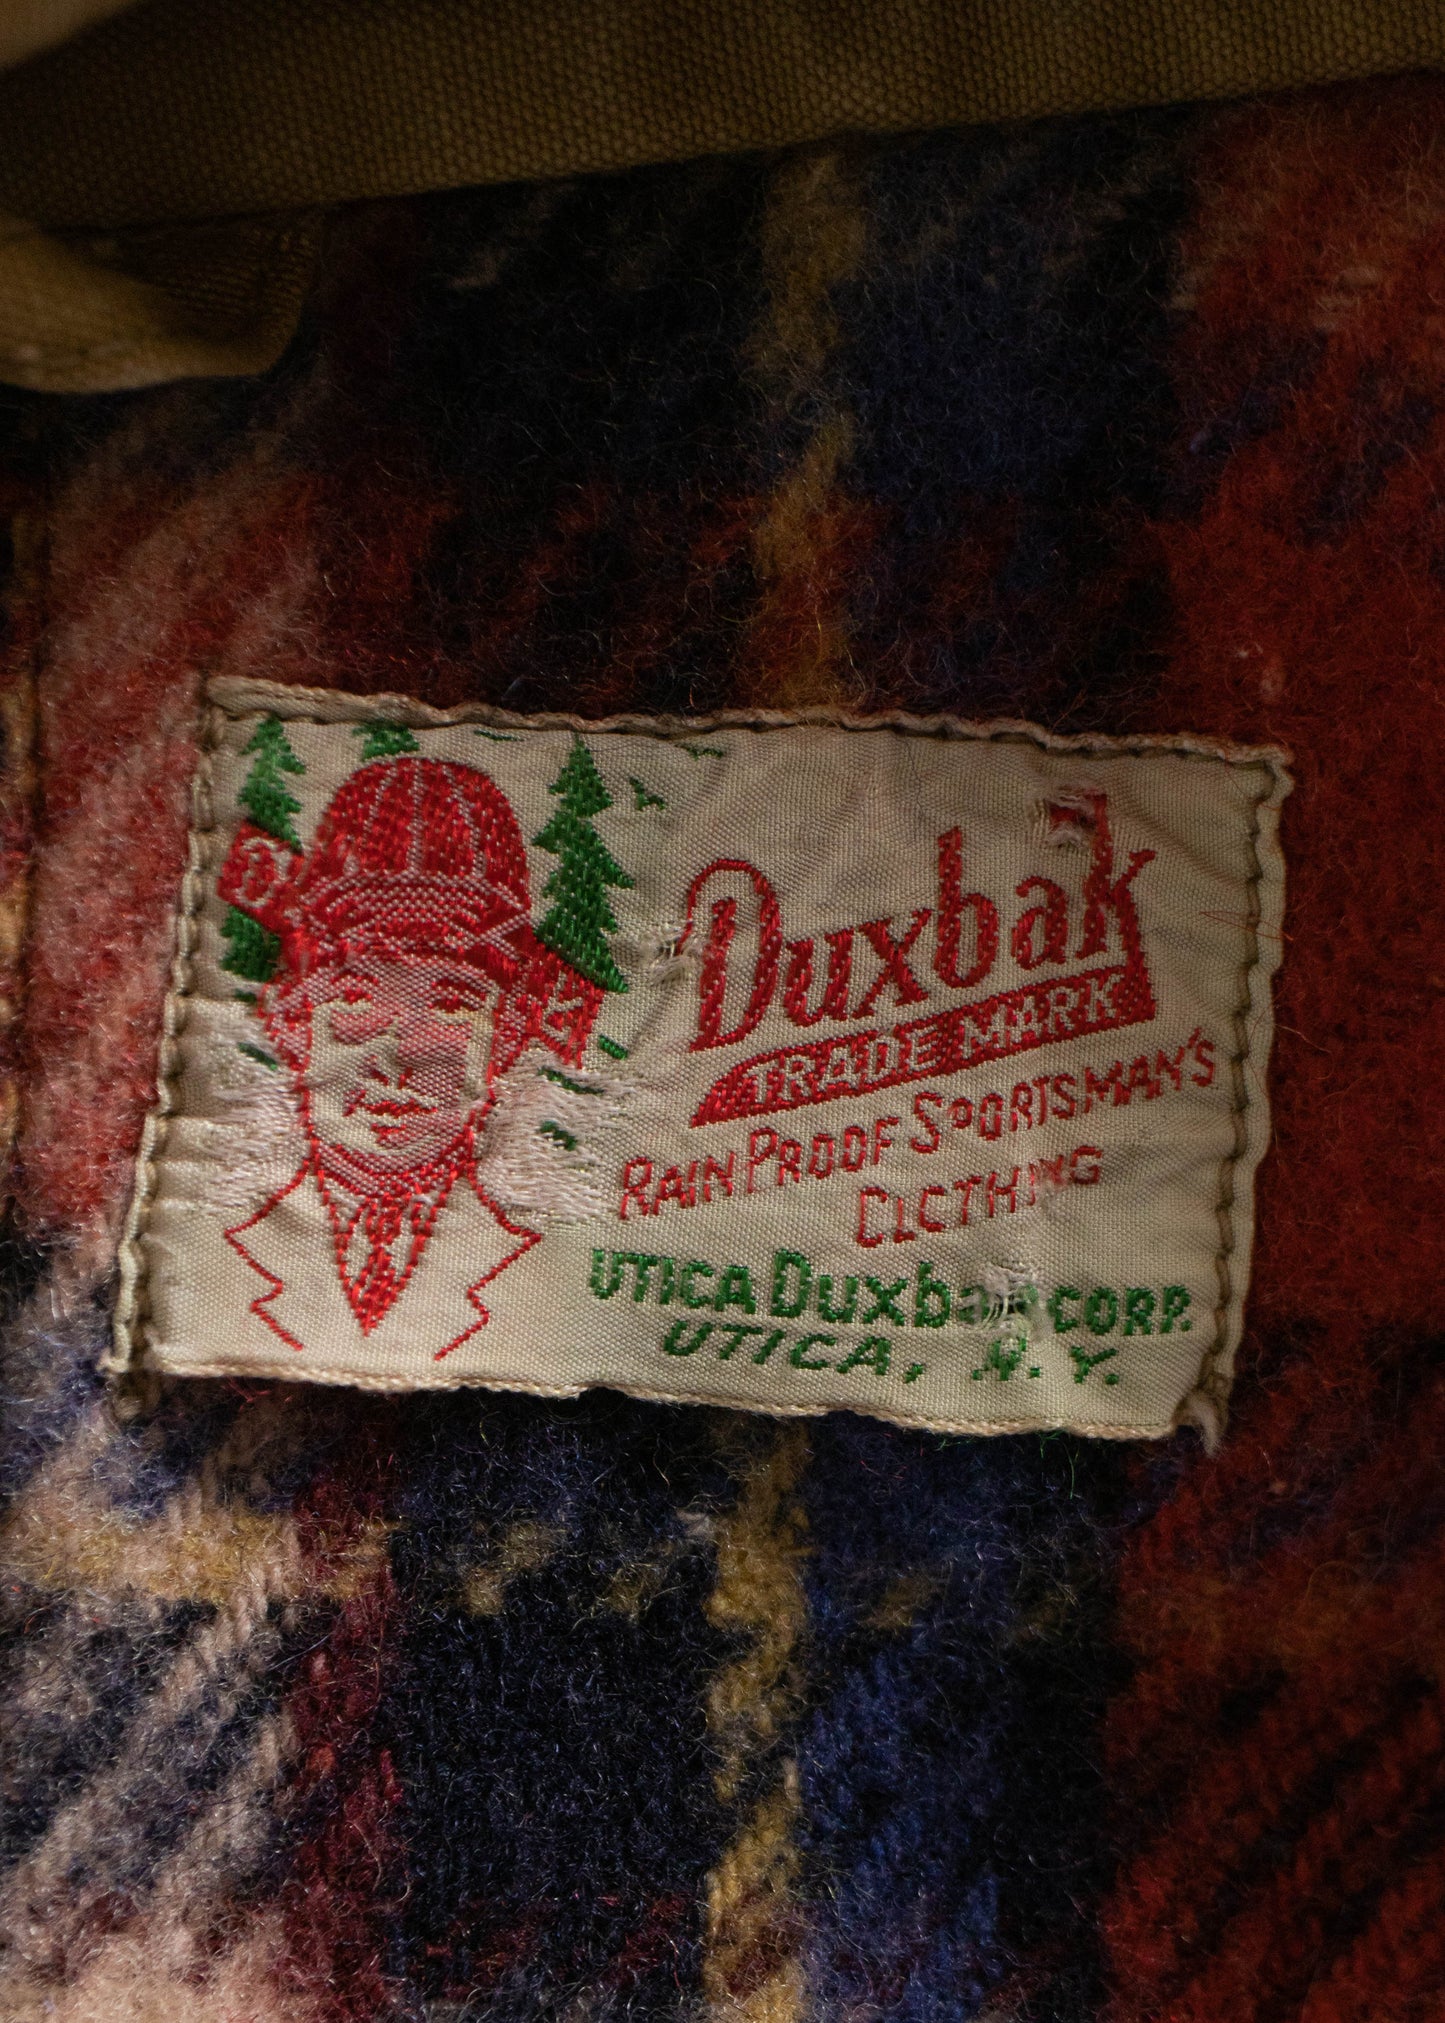 1940s Duxbak Parka Jacket Size L/XL